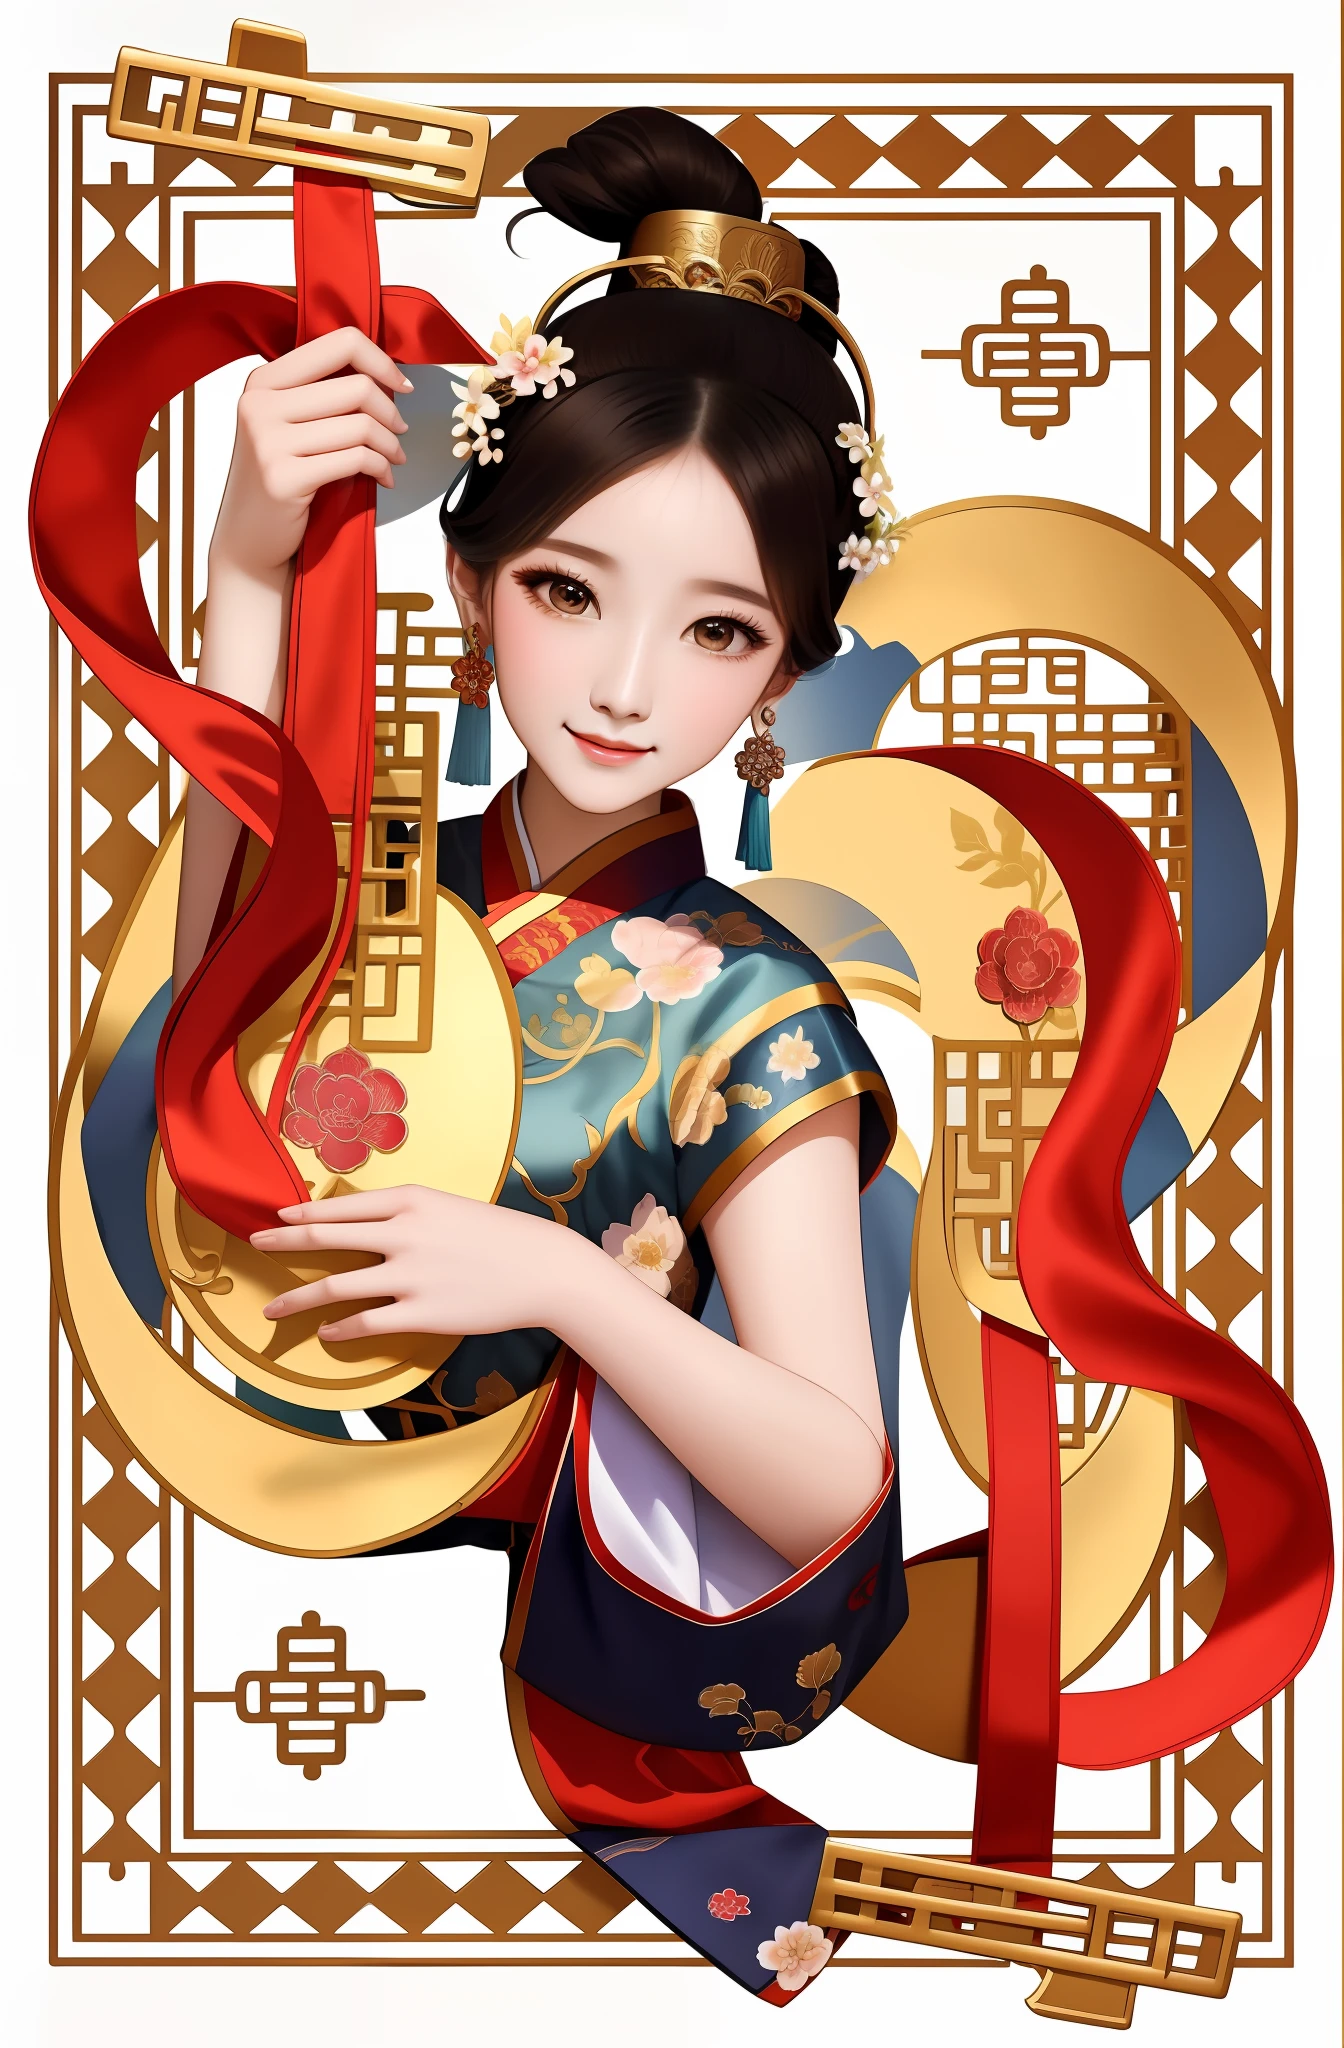 Крупный план женщины, держащей инструмент, дворец ， девушка в ханьфу, красивая иллюстрация произведения искусства, древняя китайская красавица, вдохновленный У Бином, Древняя китайская принцесса, китаянка, вдохновленный Сун Маоджином, Древний китайский стиль искусства, вдохновленный Гун Сянь, Работа в стиле Гувиза, вдохновленный Пак Хуа